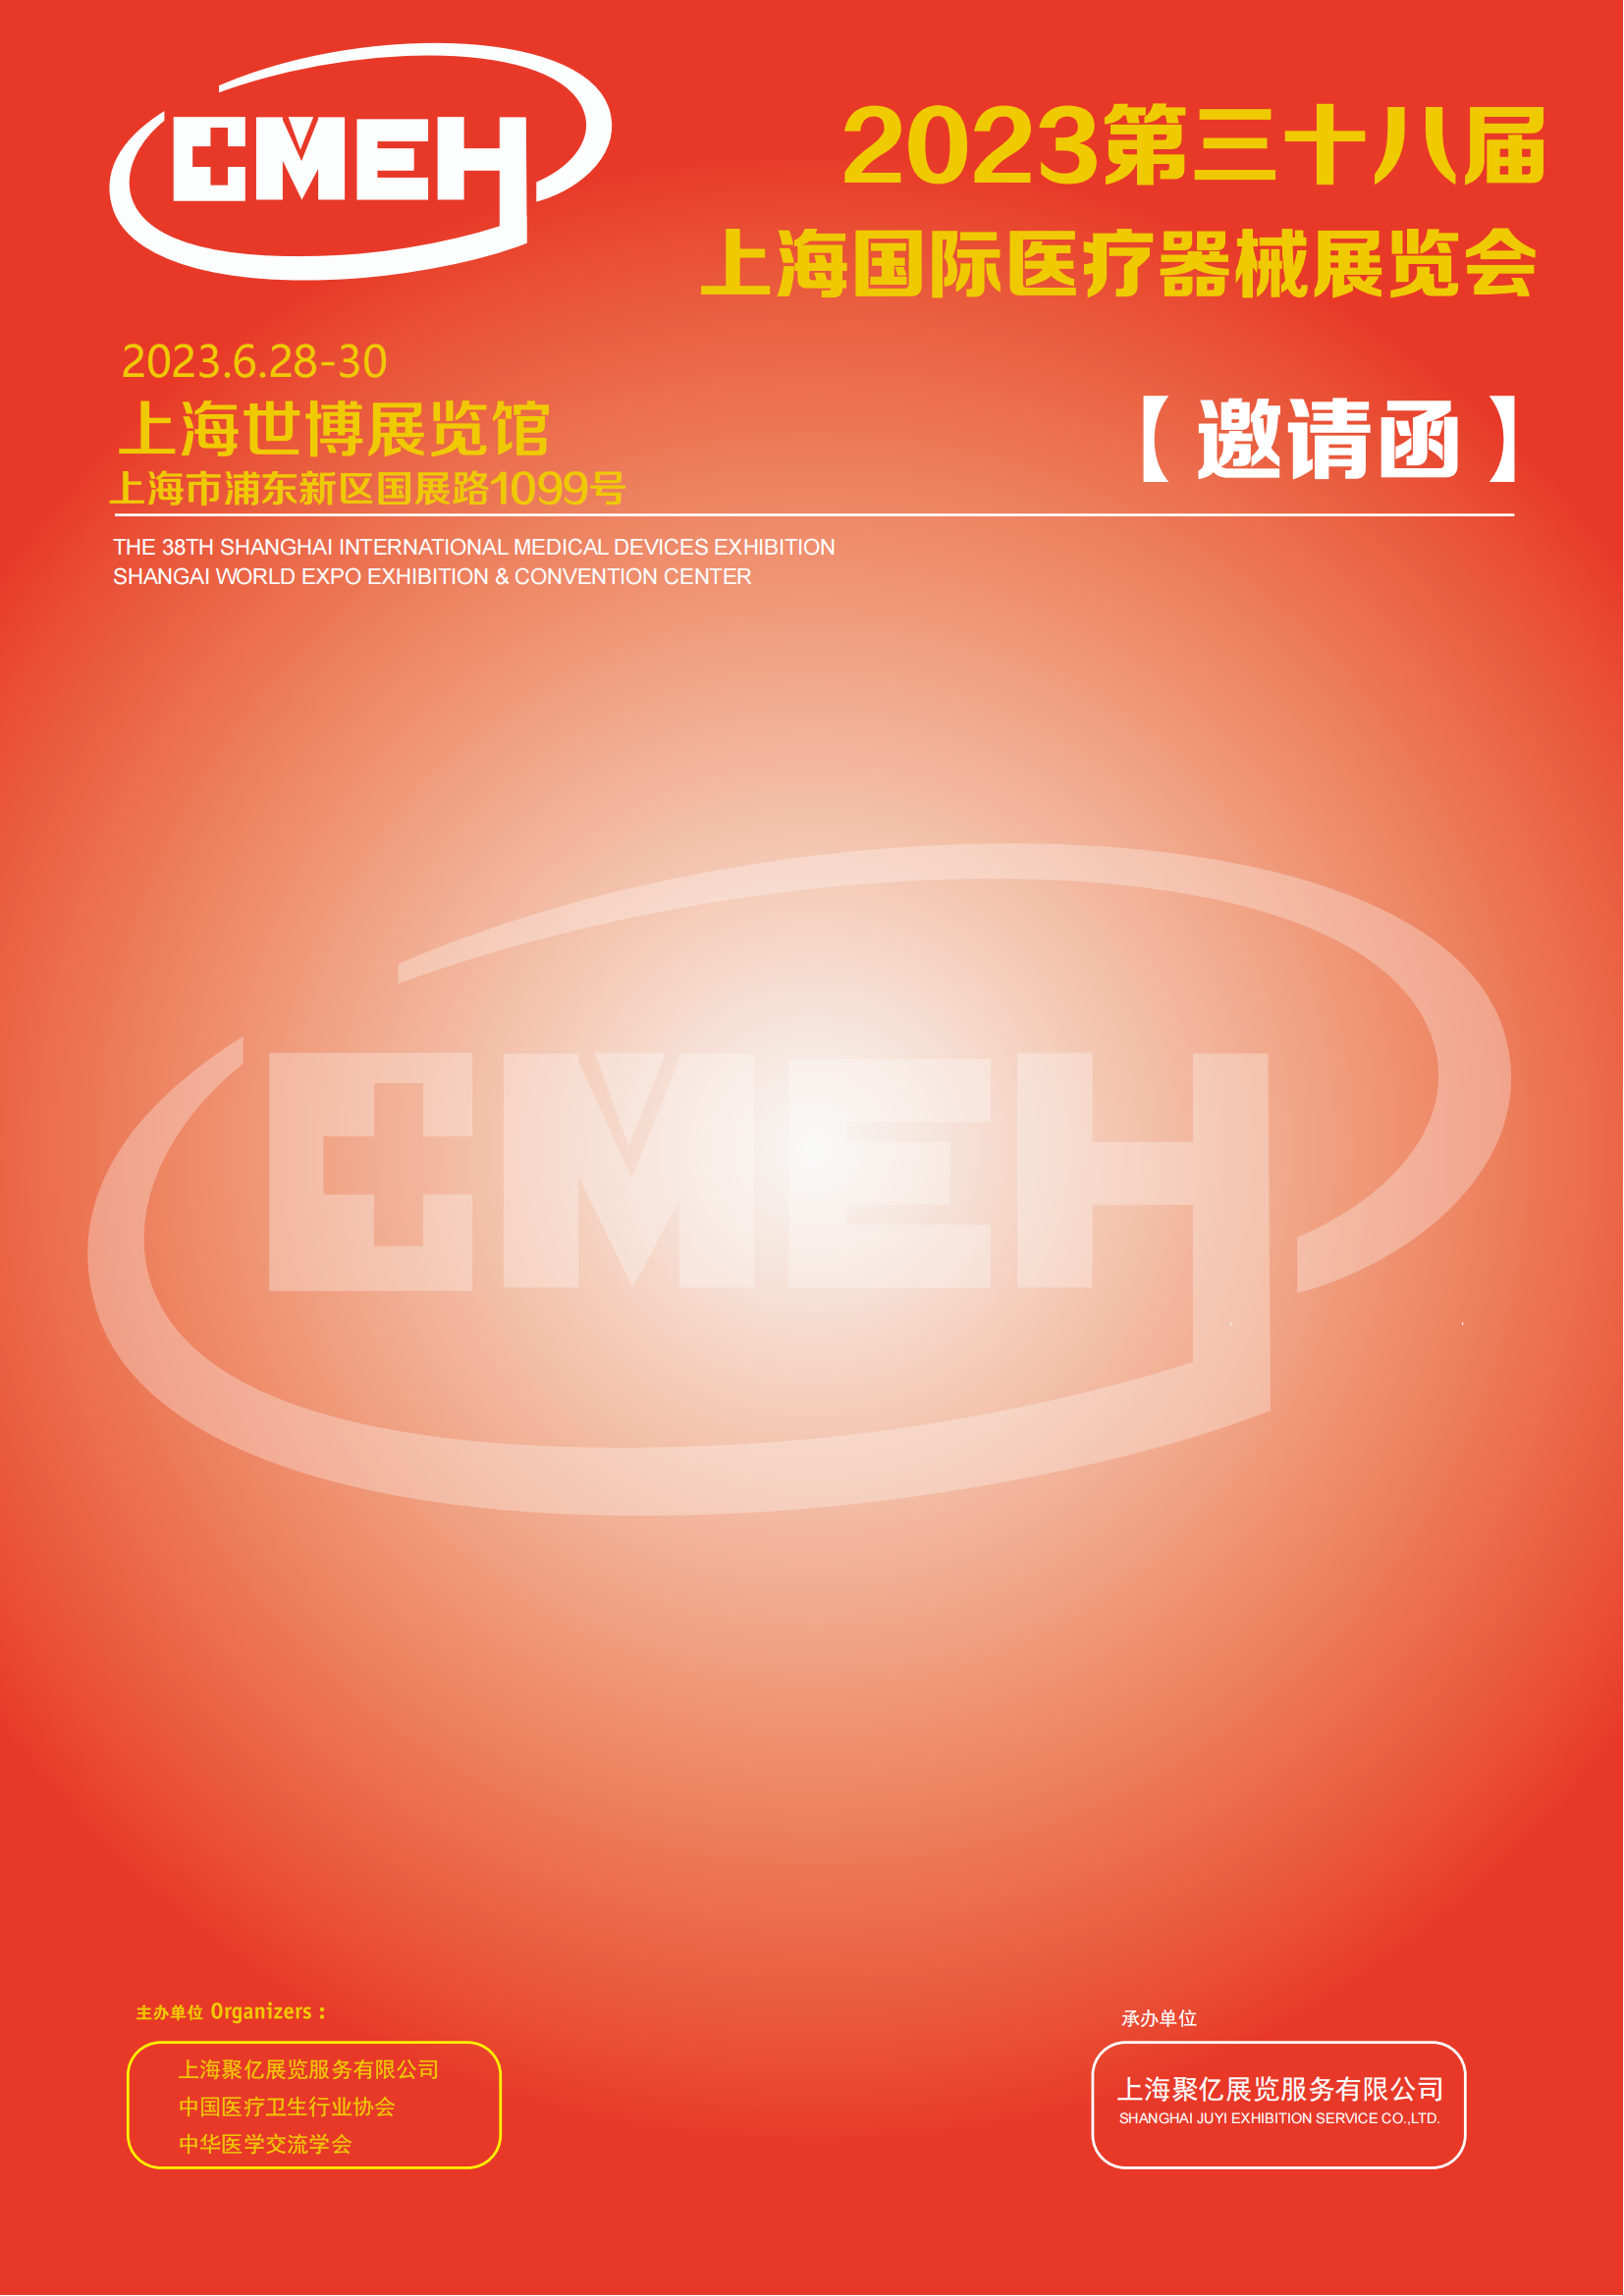 2023年上海国际医疗器械展览会 谢磊_00.png